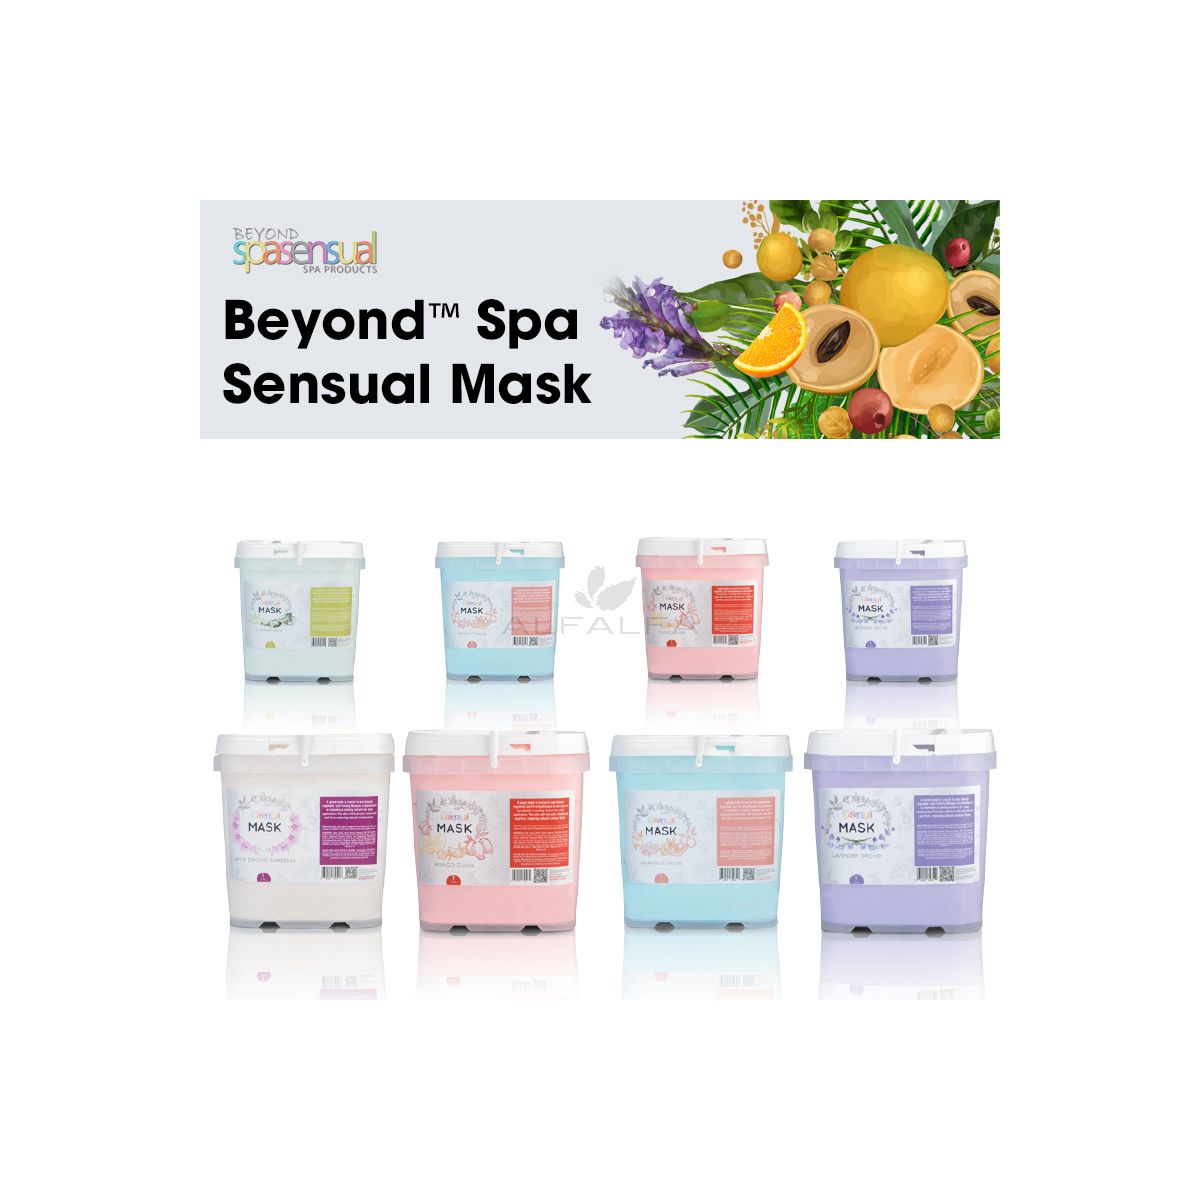 Beyond Spa Sensual Mask